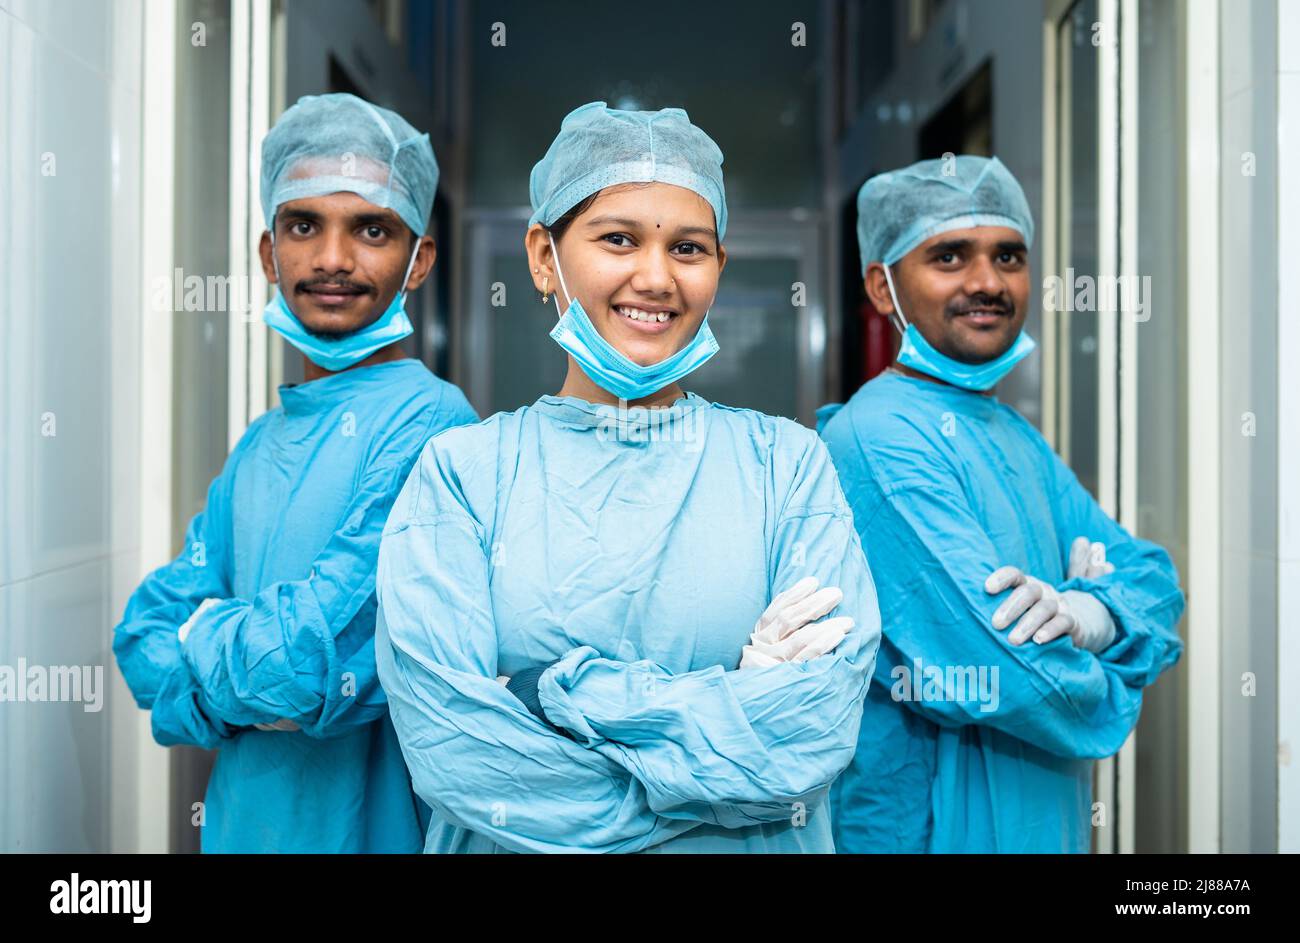 Team von jungen Ärzten in Operation Kittel selbstbewusst auf Krankenhausflur stehen - Konzept der Karriere, Beruf Stockfoto